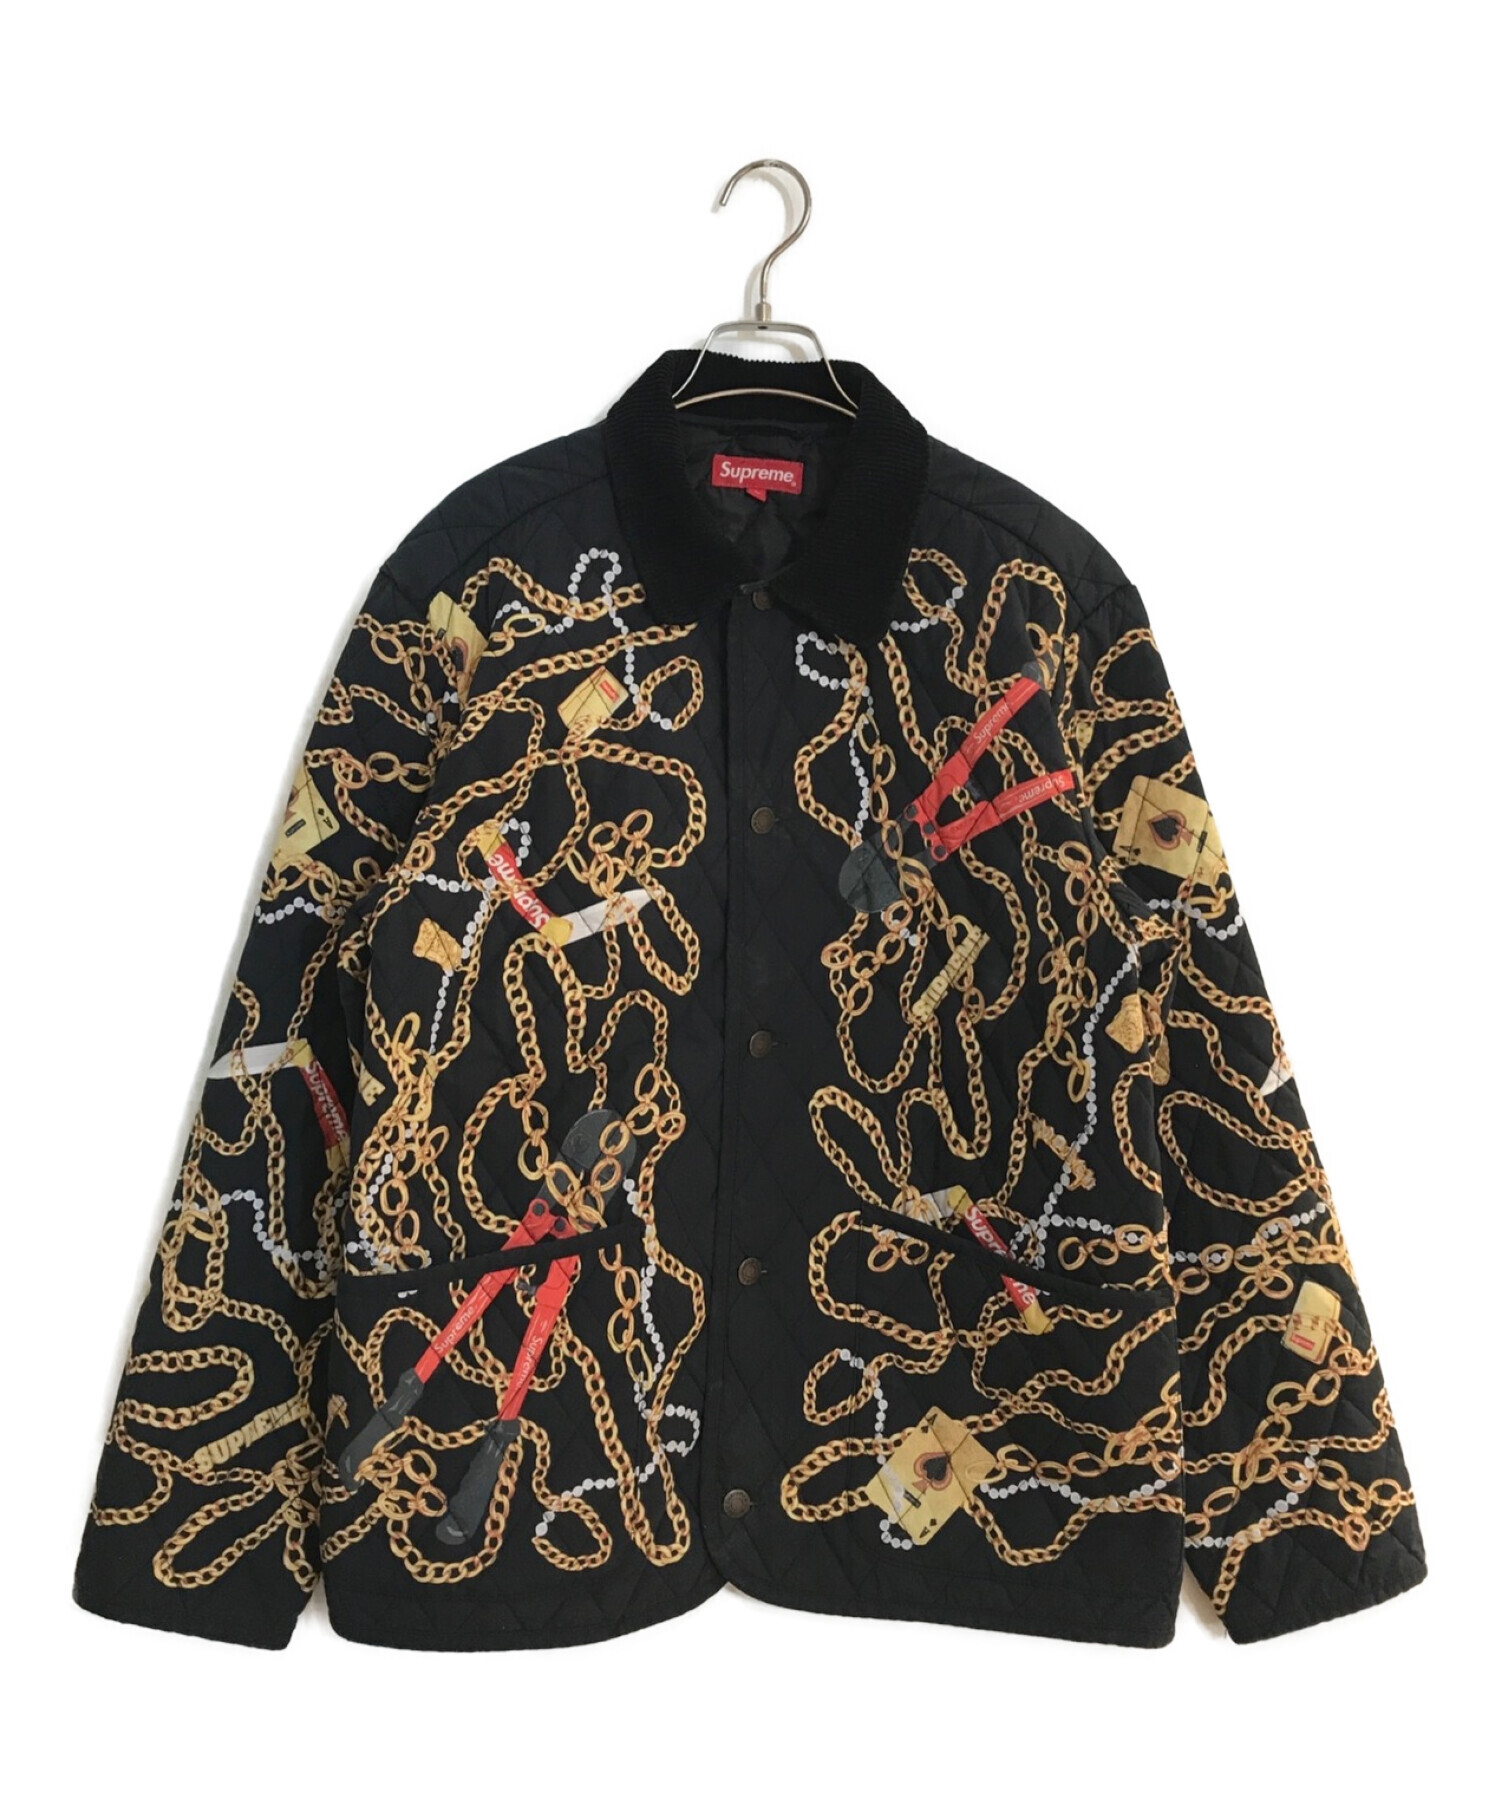 SUPREME (シュプリーム) Chains Quilted Jacket/チェーンキルティングジャケット ブラック サイズ:M